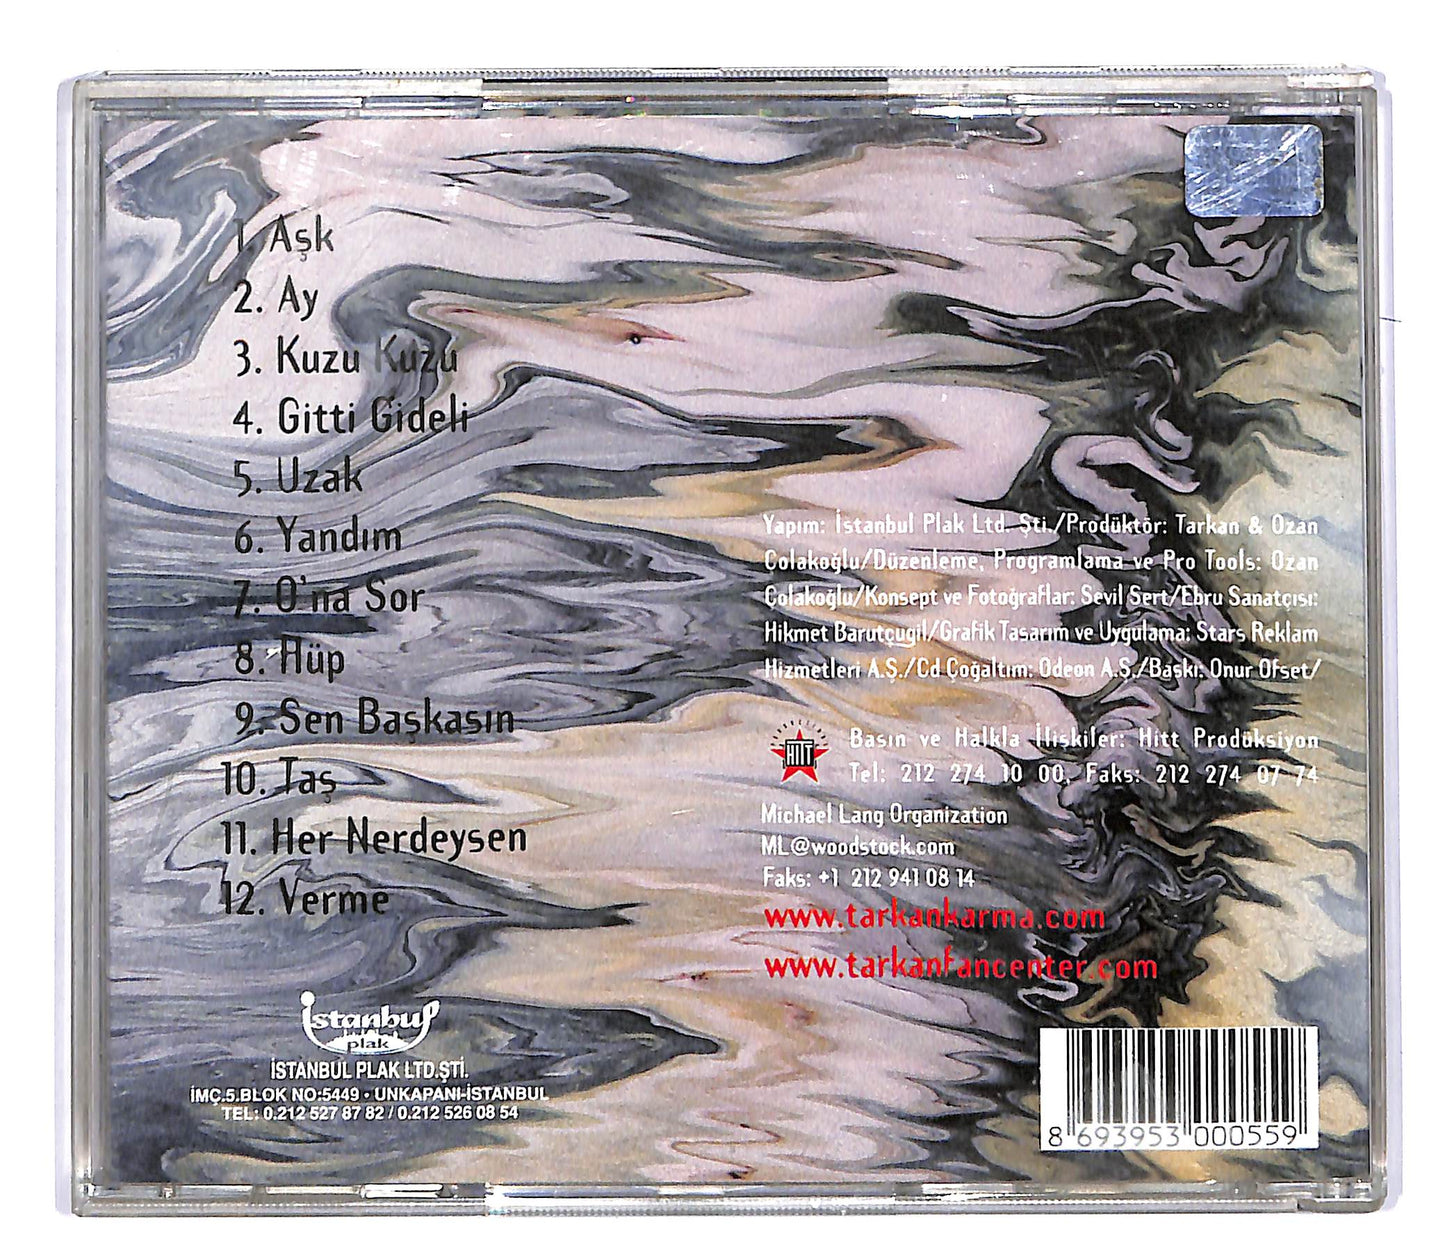 EBOND Tarkan - Karma CD CD054021